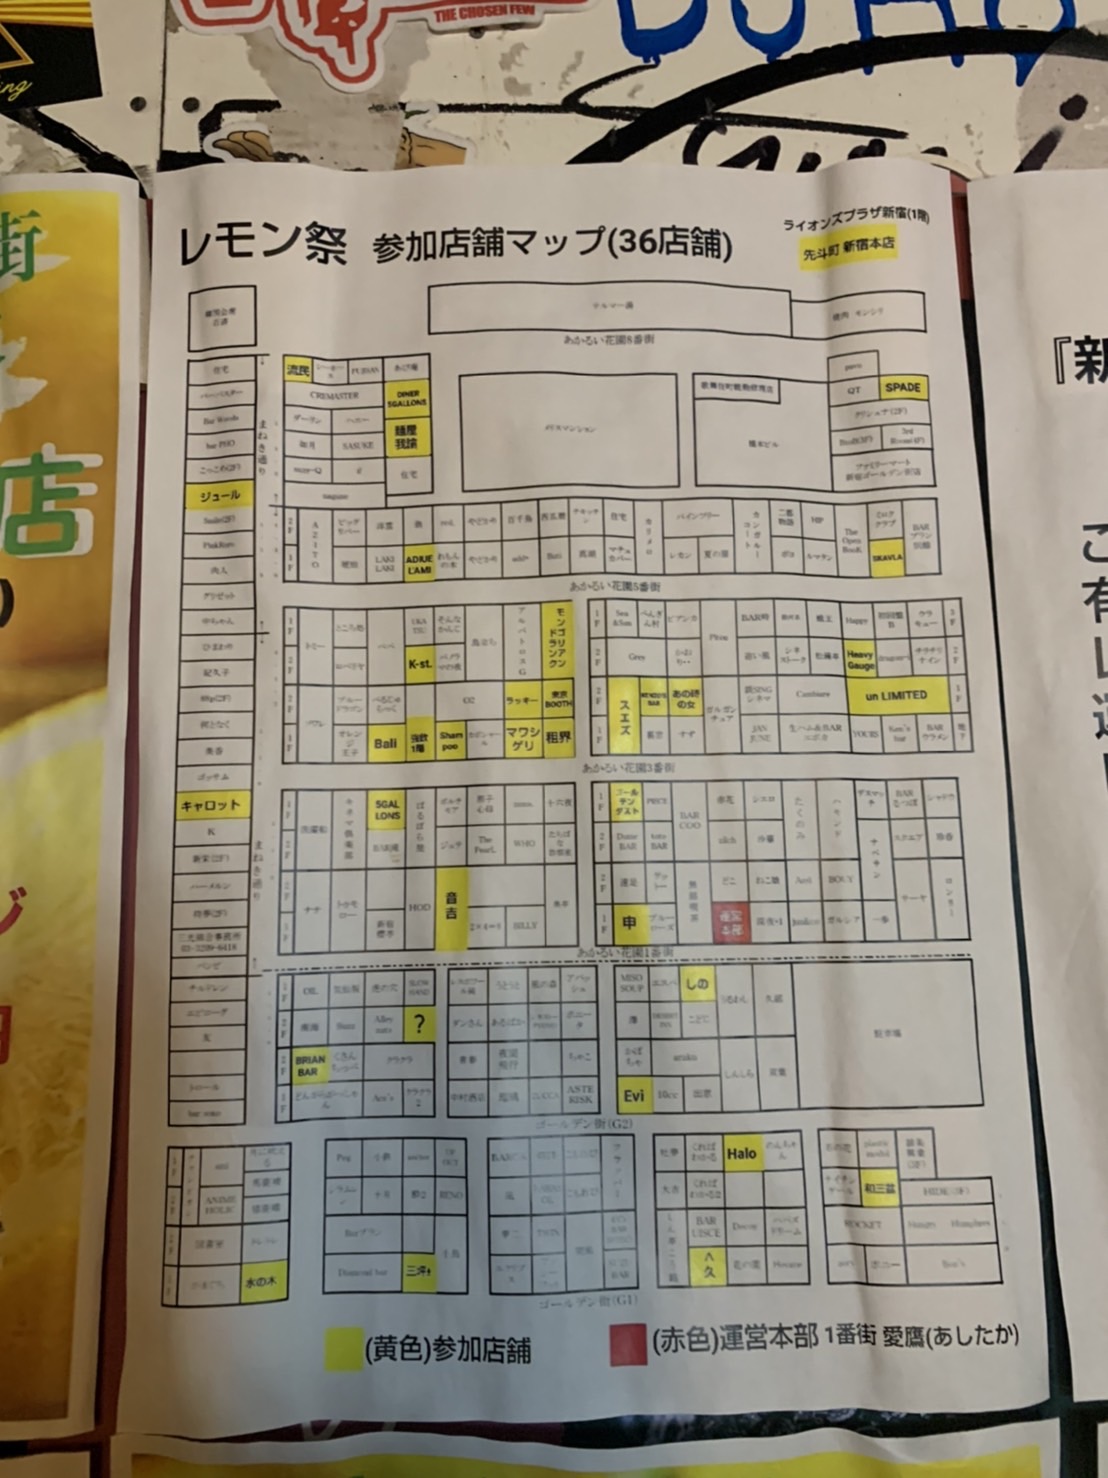 新宿ゴールデン街でレモンサワーを楽しもう 12月5日 日 レモン祭 開催